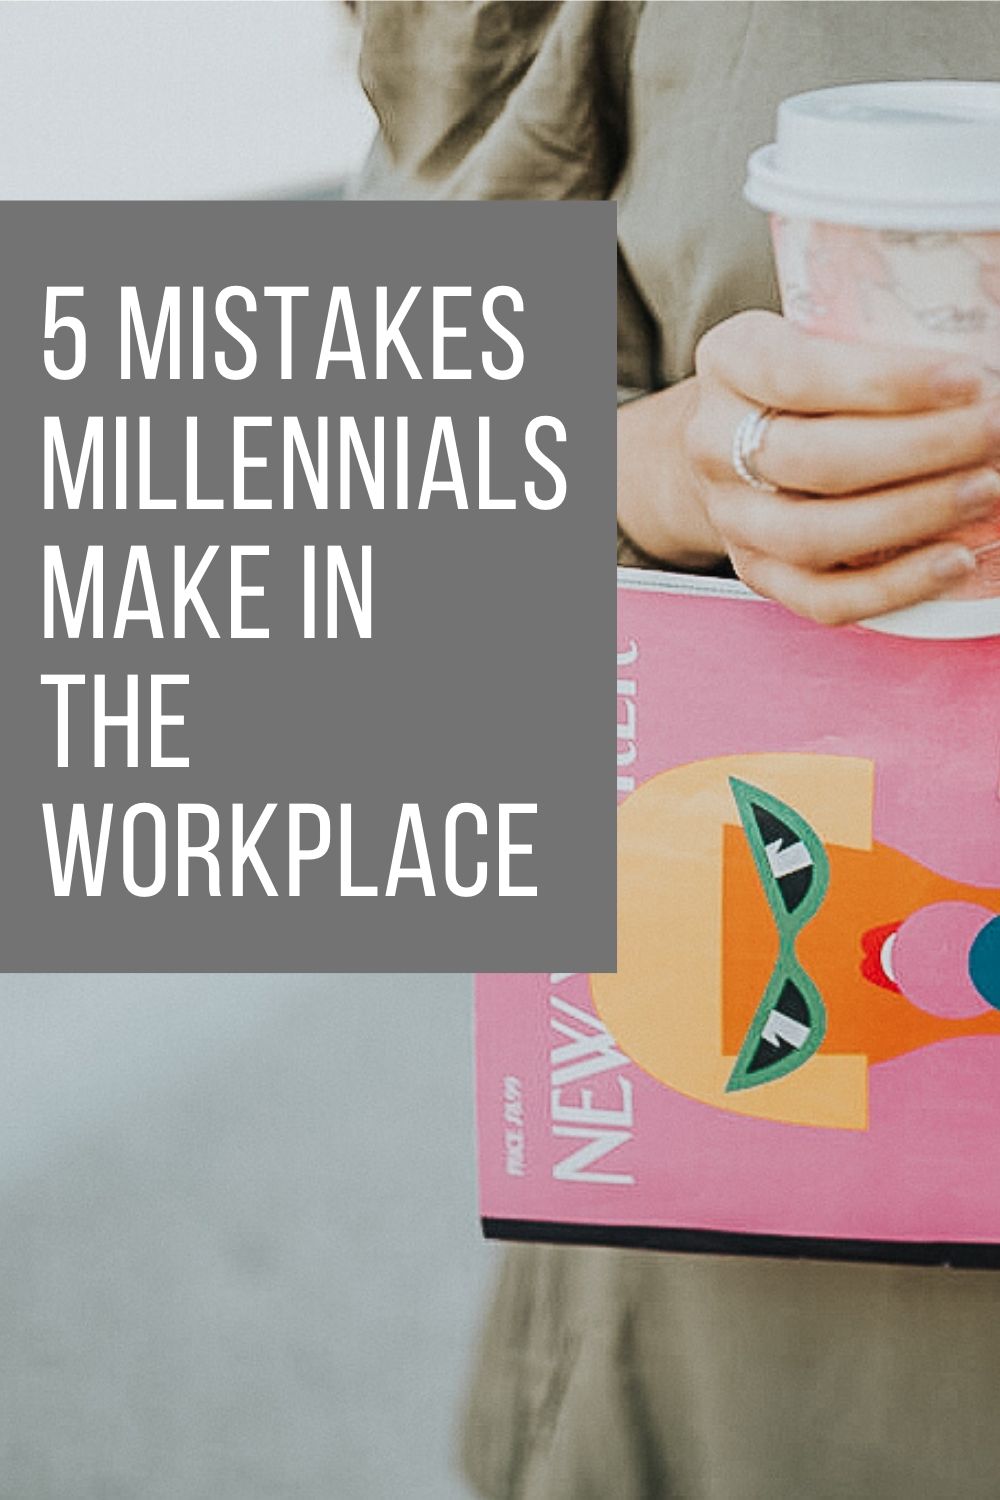 millennials_workplace_tips